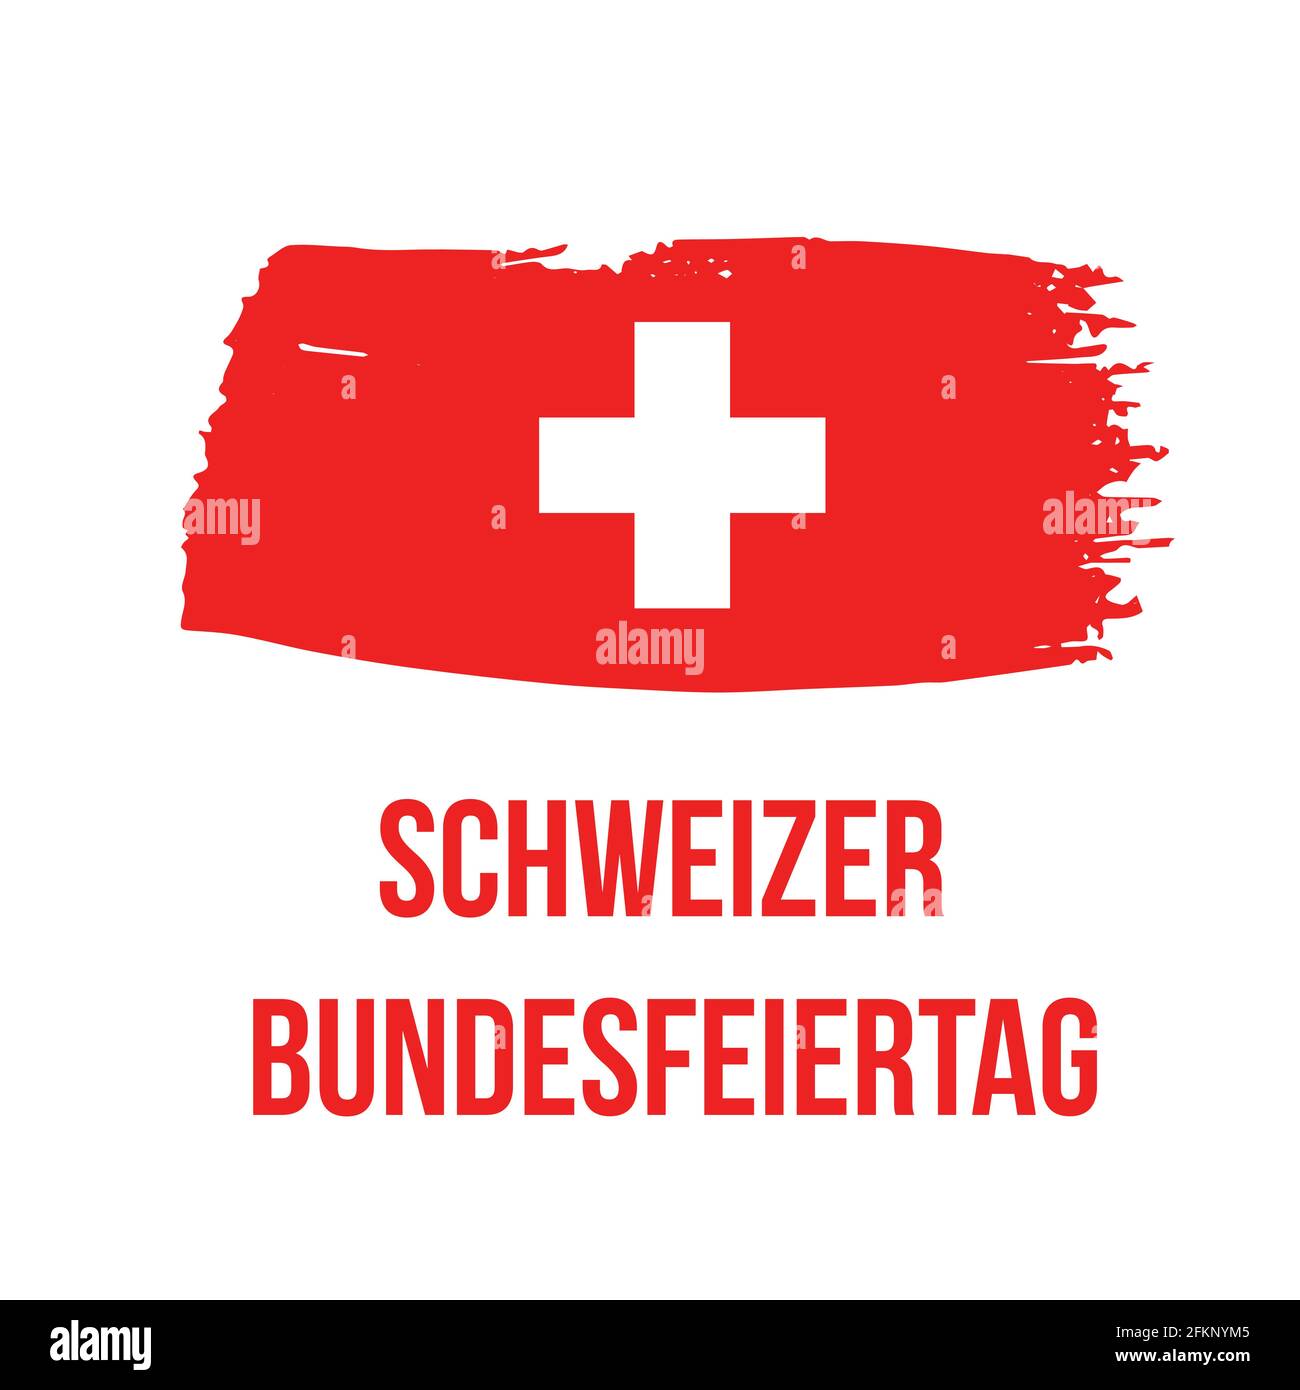 Deutsches Hemd Ausgeschnittene Stockfotos und -bilder - Alamy